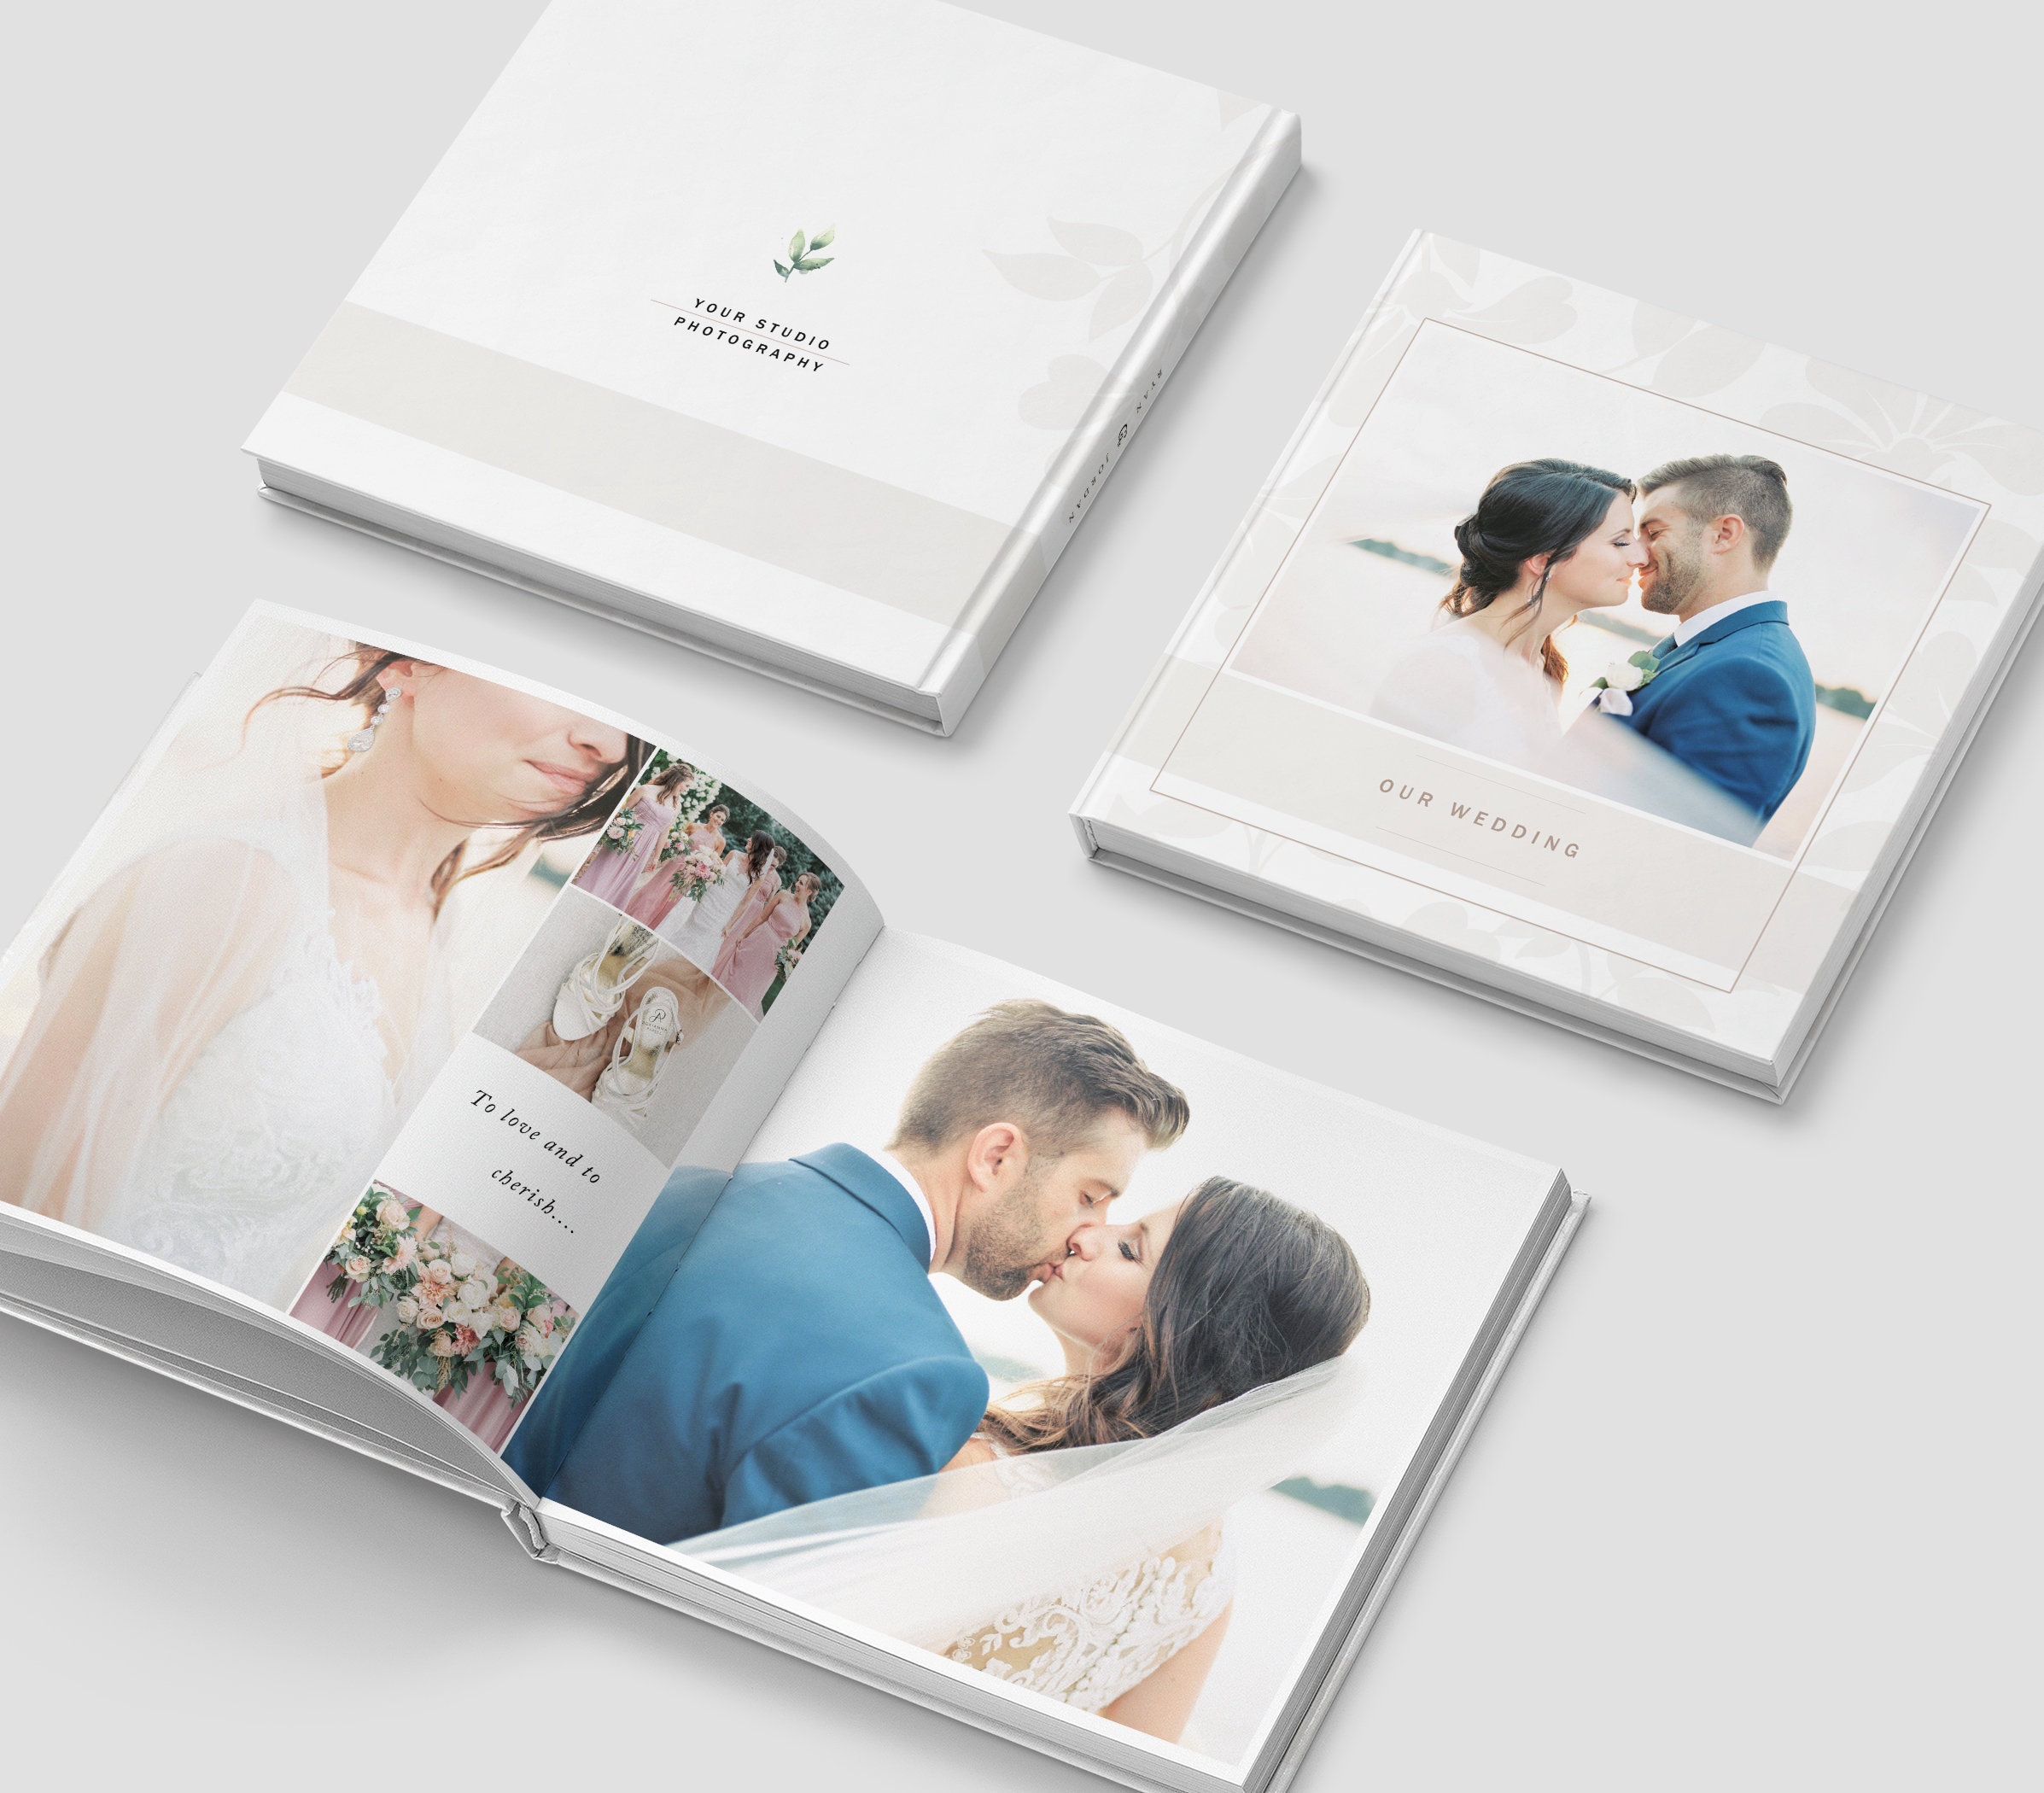 For creative album - Wedding Album Designing & Printing.